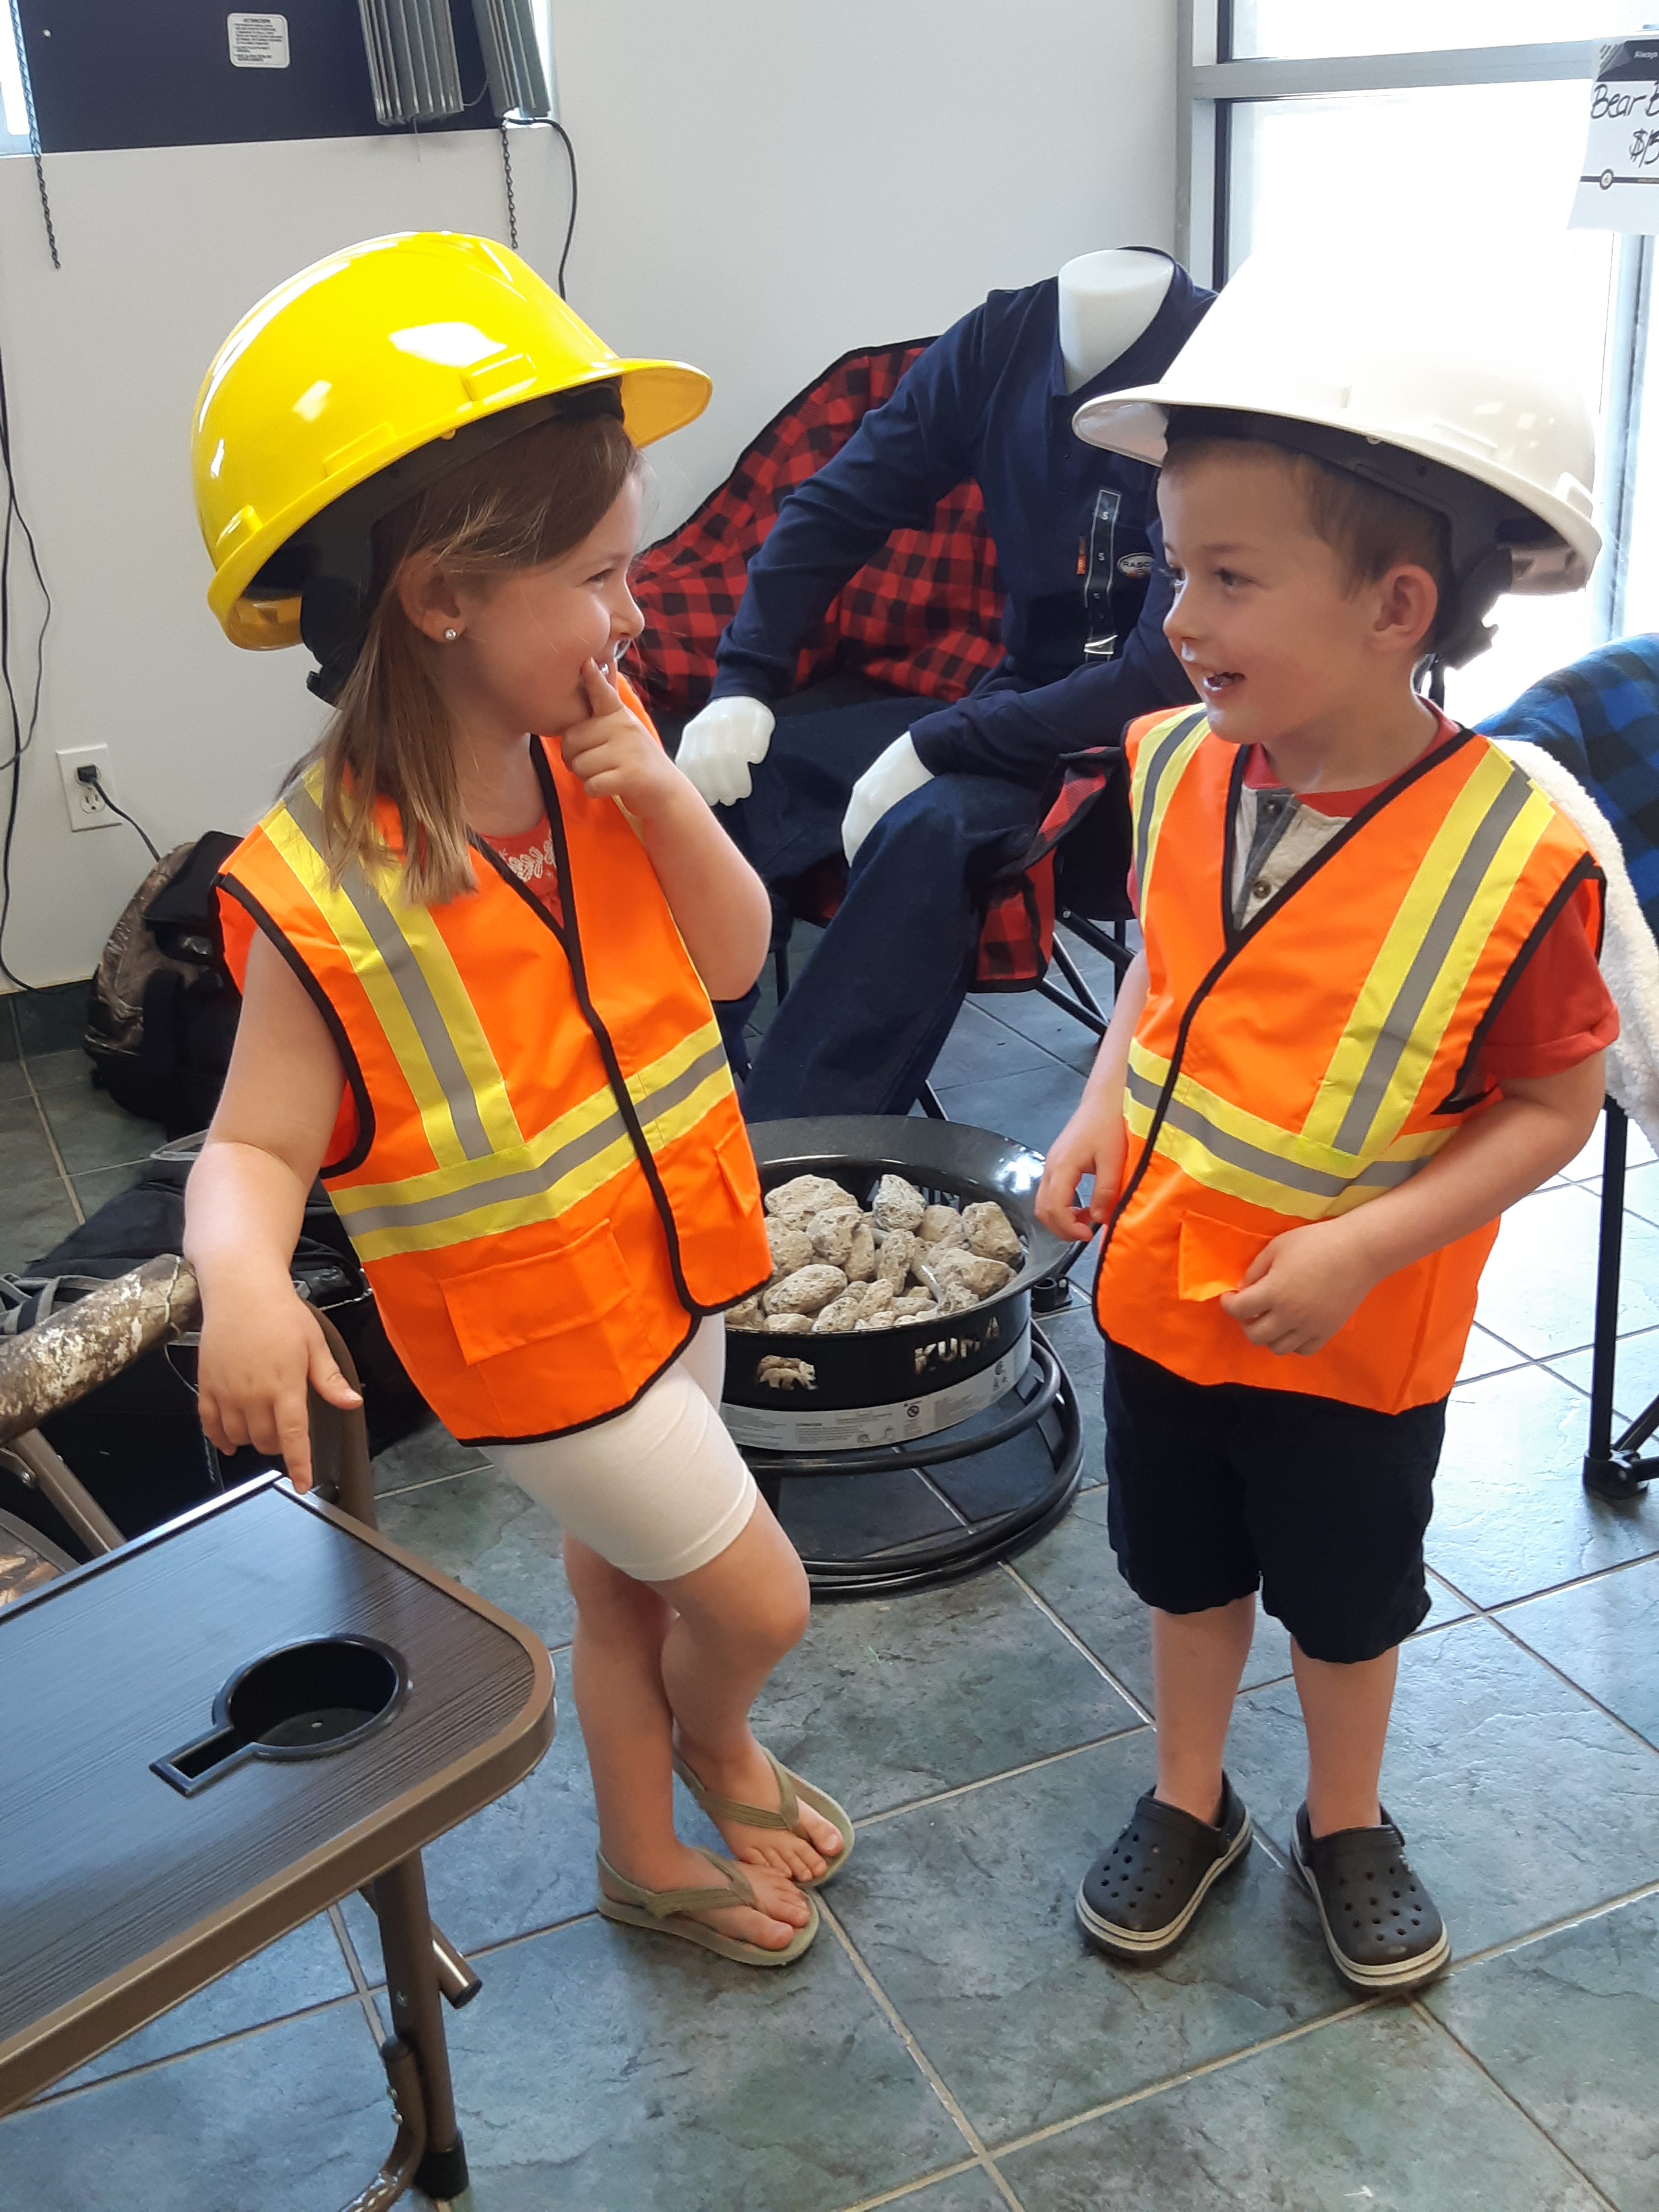 Two children in orange hi viz safety vests and hardhats